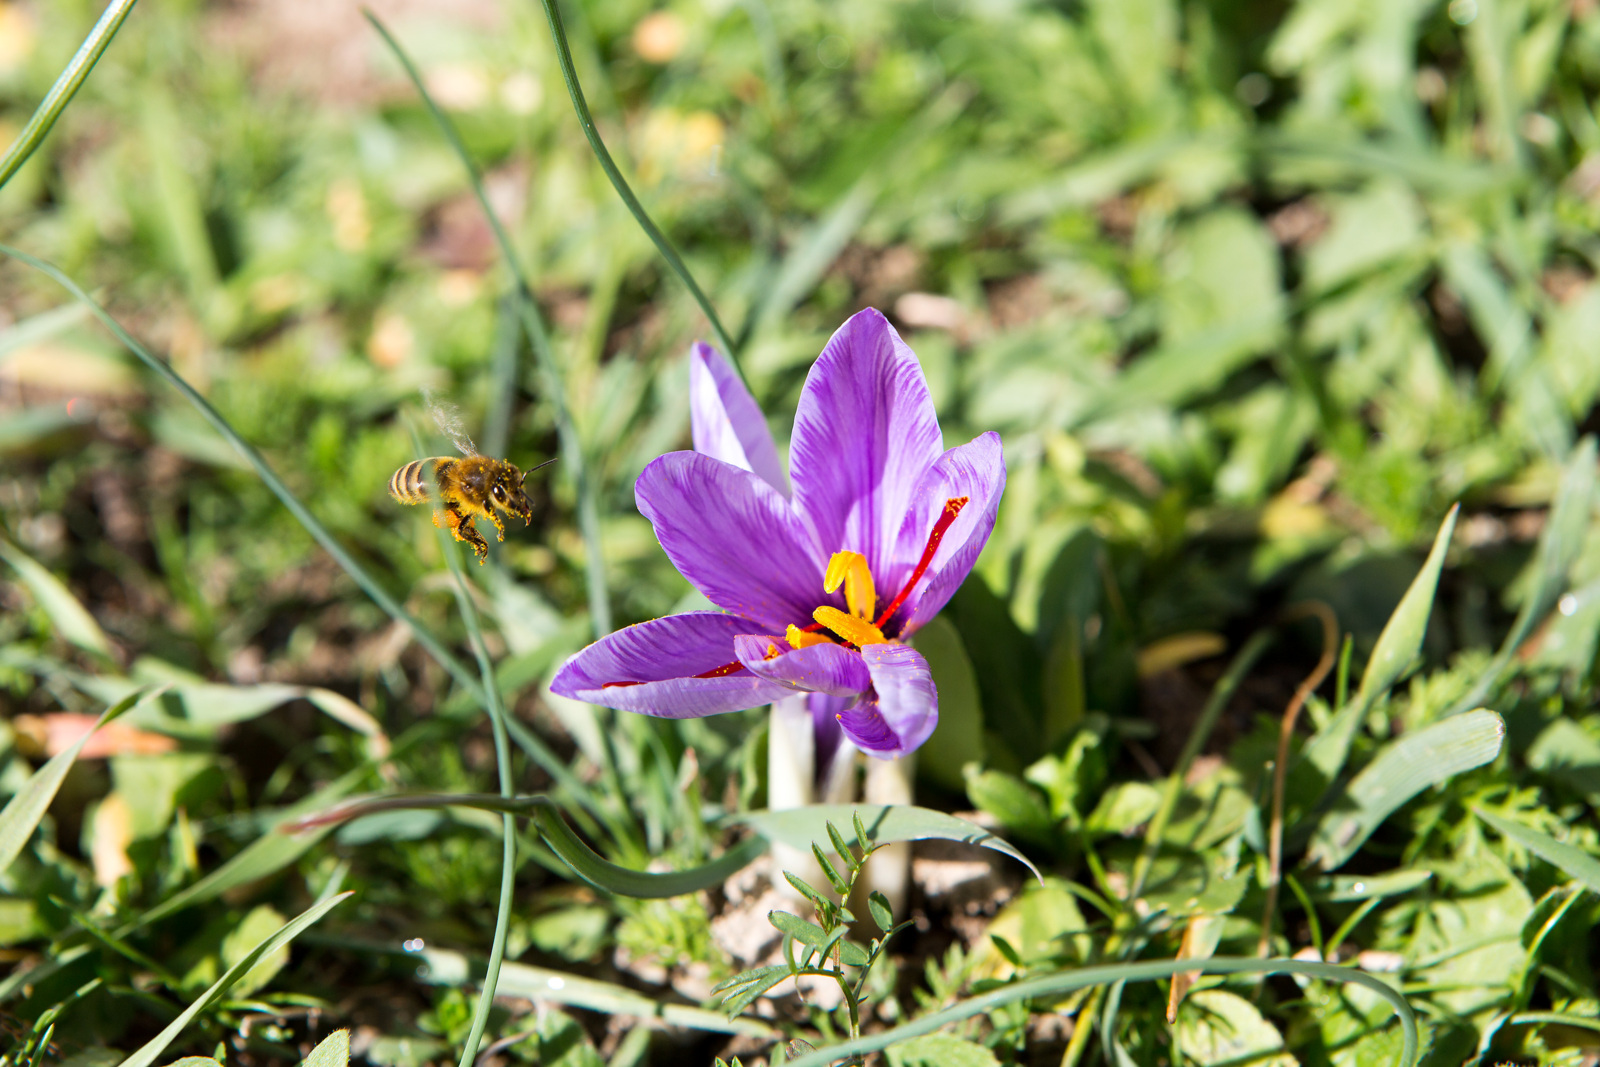 Saffron flower